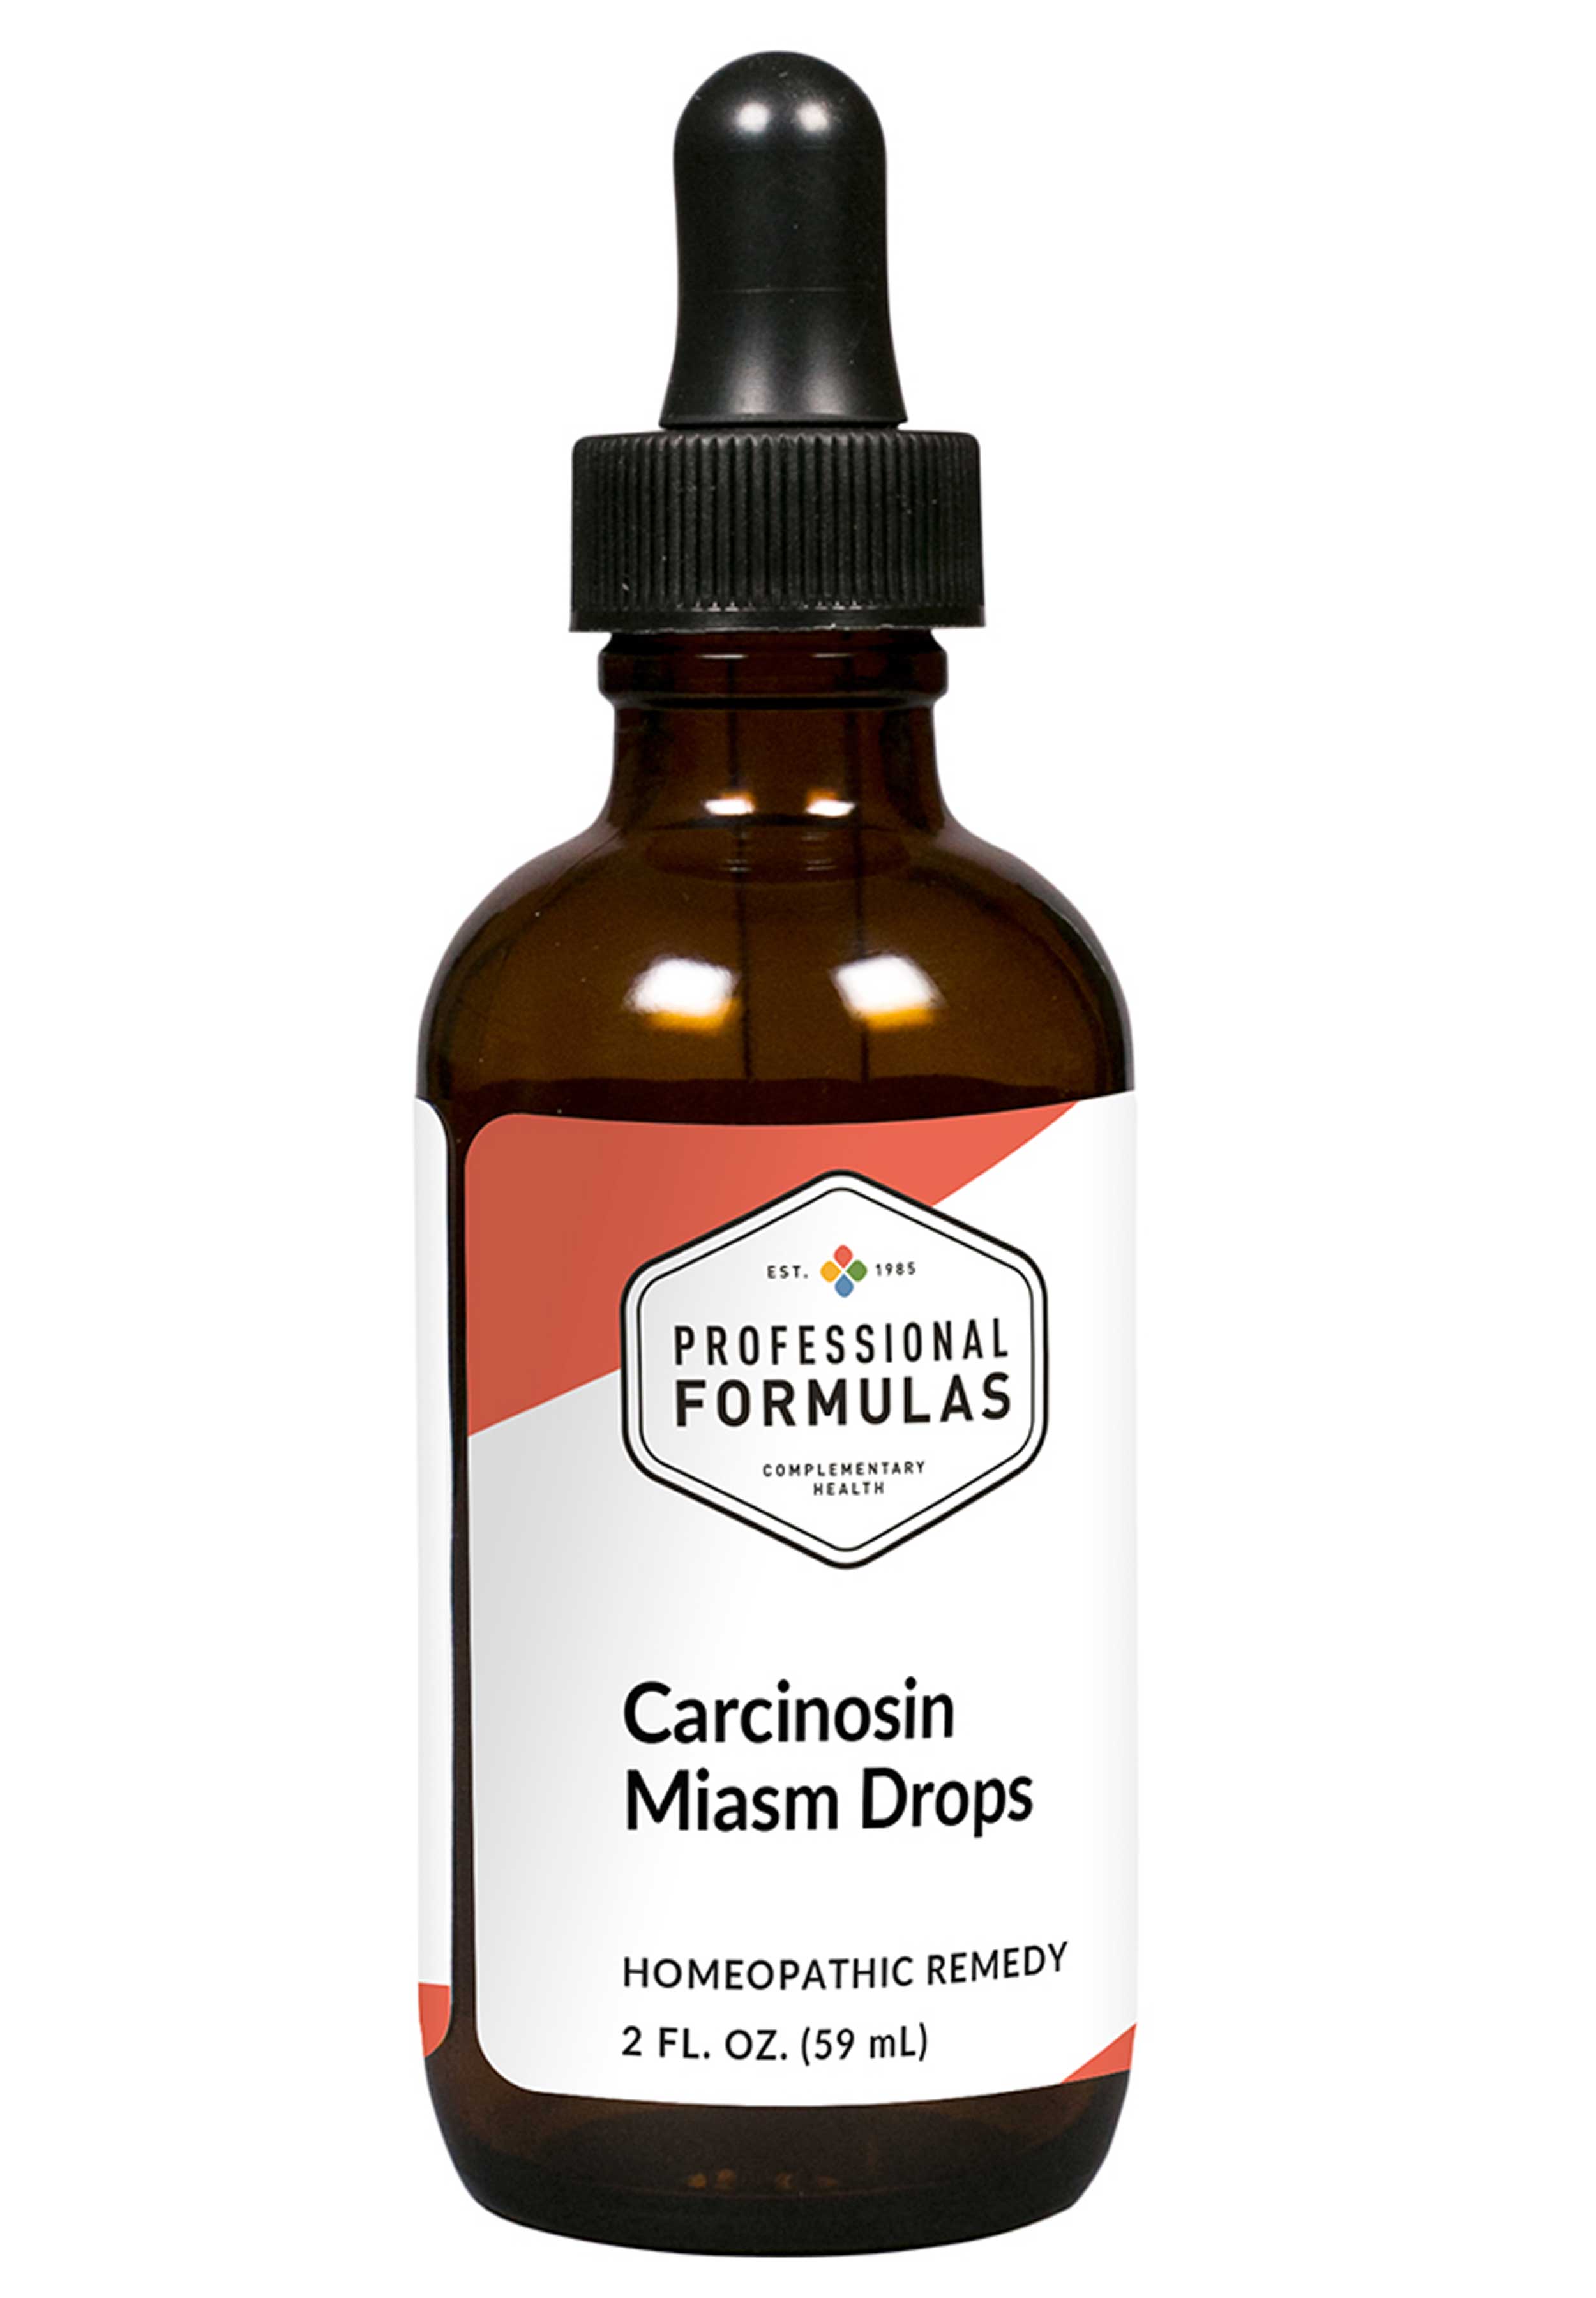 Professional Formulas Carcinosin Miasm Drops